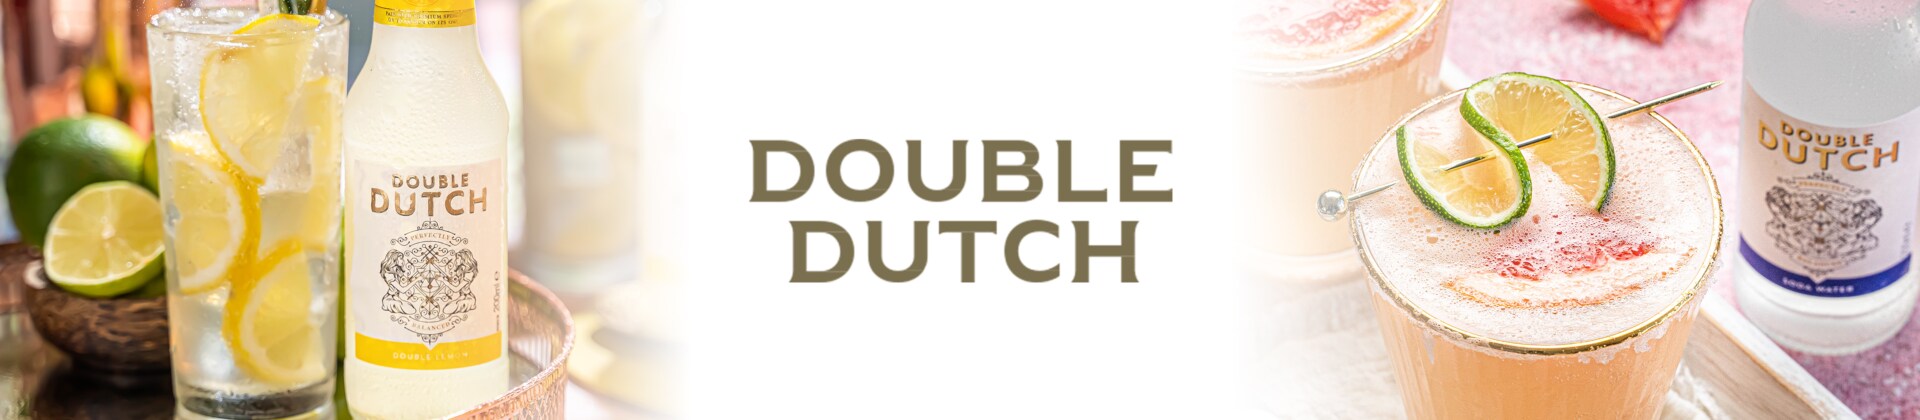 Double Dutch merkenpagina